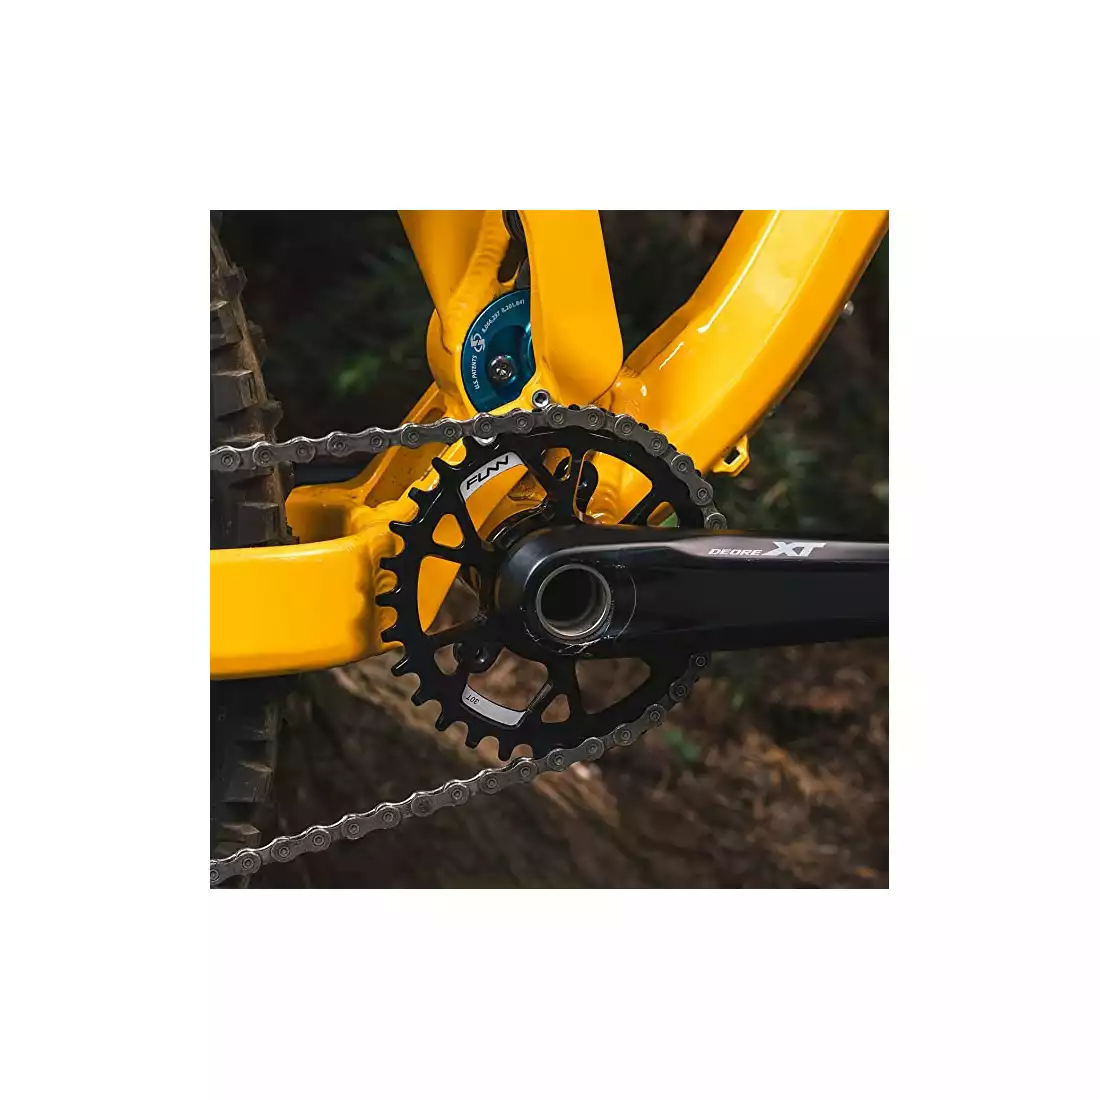 FUNN SOLO DS NARROW-WIDE 32T řetězové kolo pro kliky jízdního kola czarna